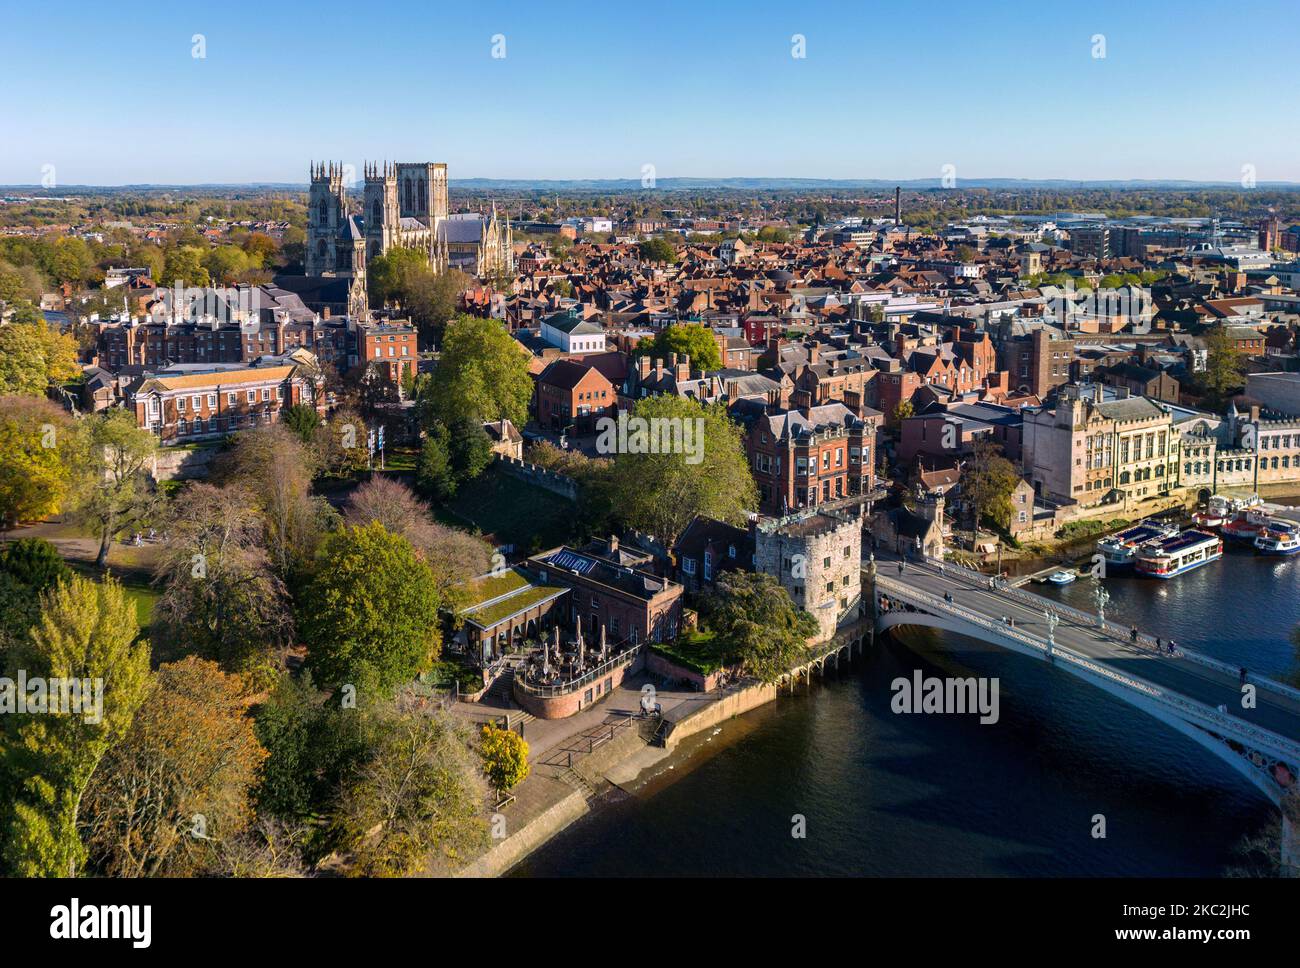 Vista aérea de la catedral de York, el río Ouse y la ciudad de York en el Reino Unido. Foto de stock